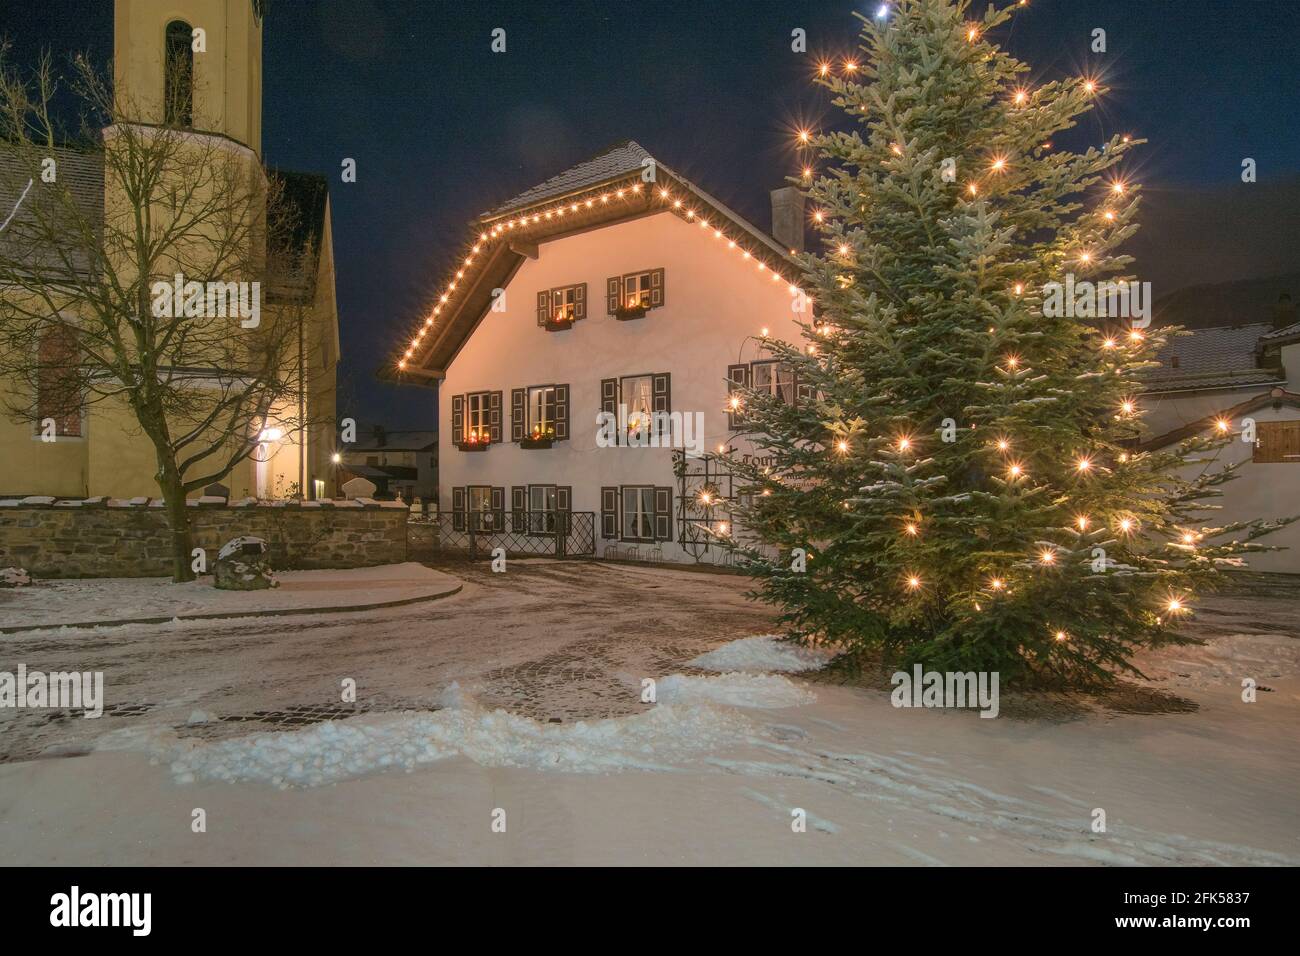 Weihnachtlichter Petersplatz in Piding mit strahlendem Christbaum Foto Stock